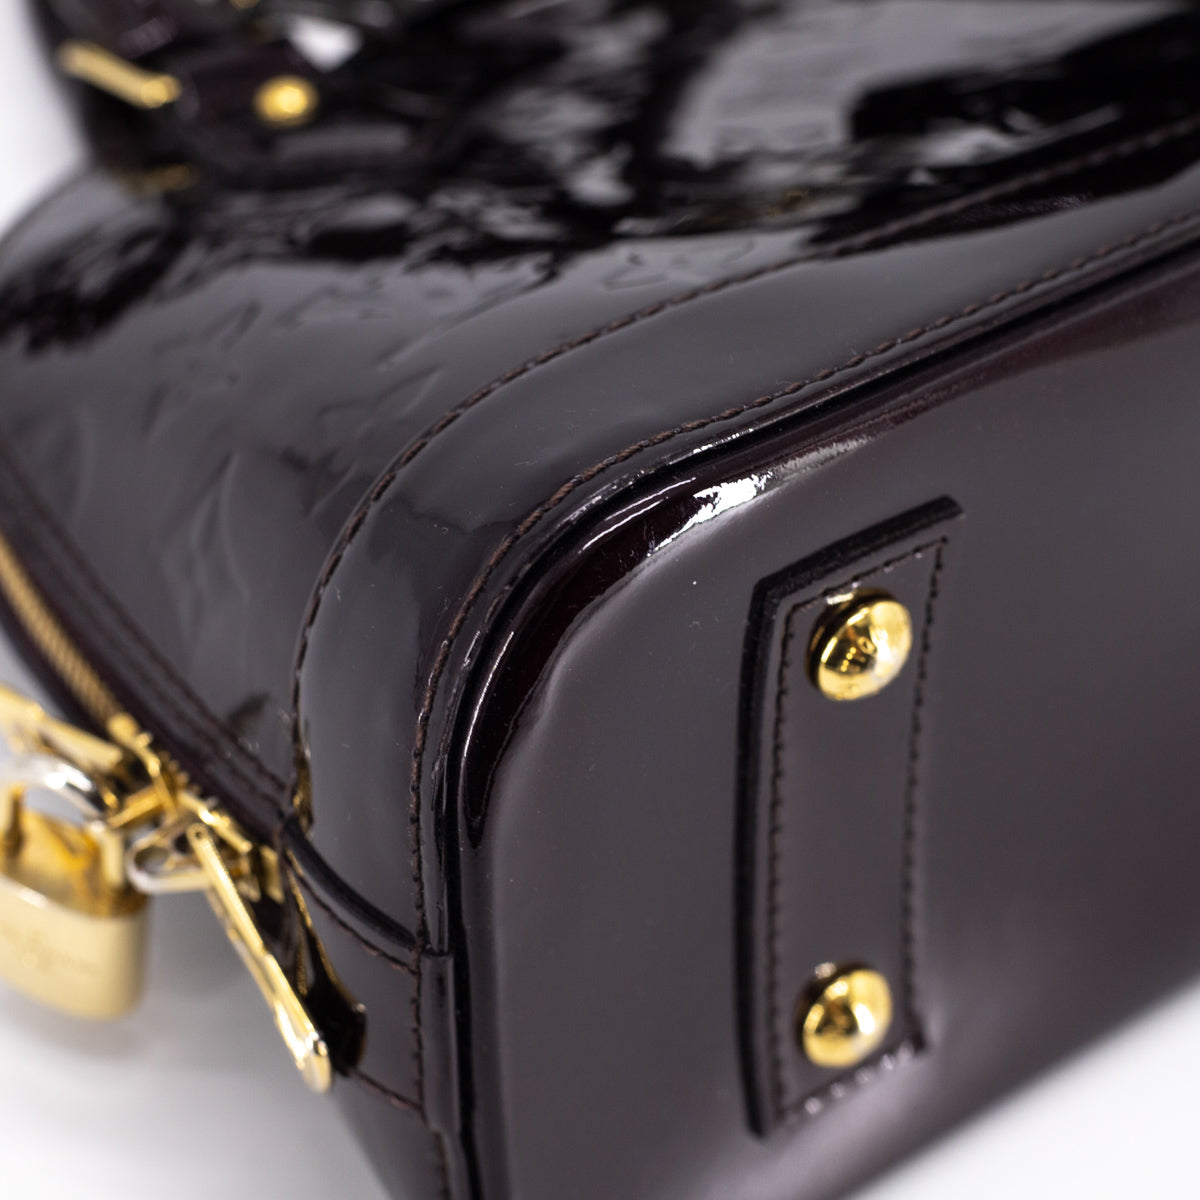 Alma bb leather handbag Louis Vuitton White in Leather - 37184751